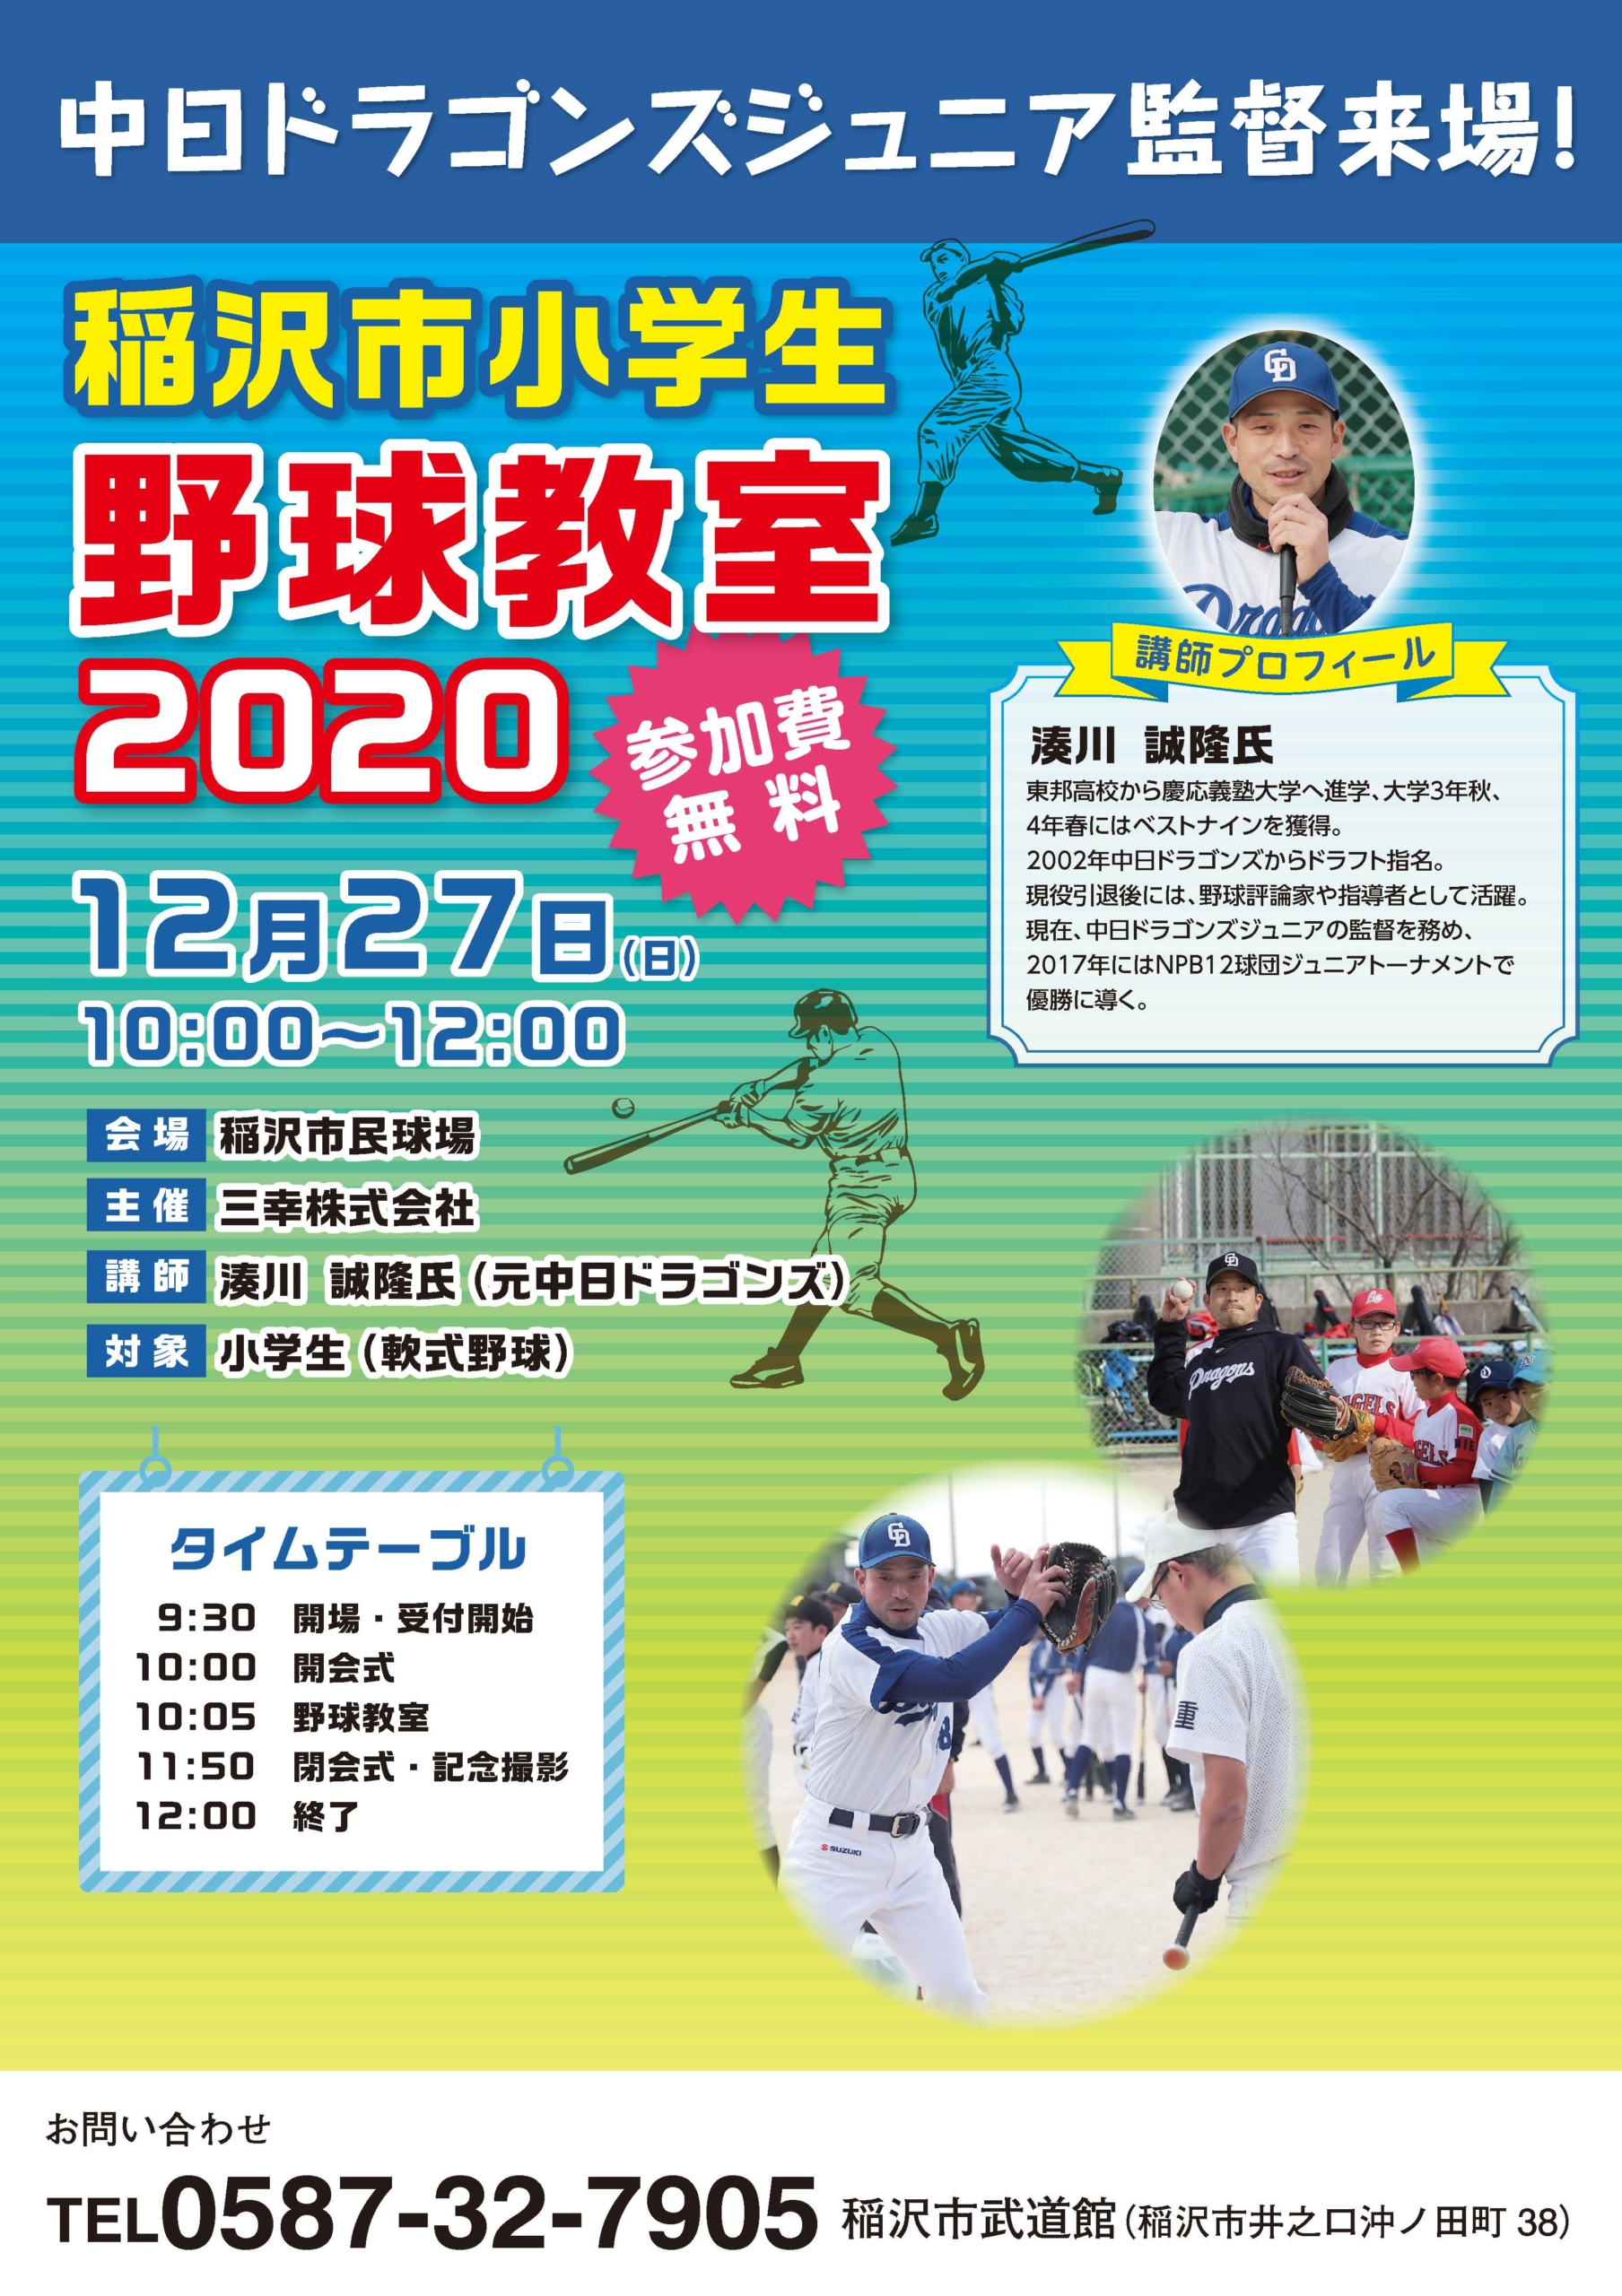 【12/27】稲沢市小学生野球教室2020